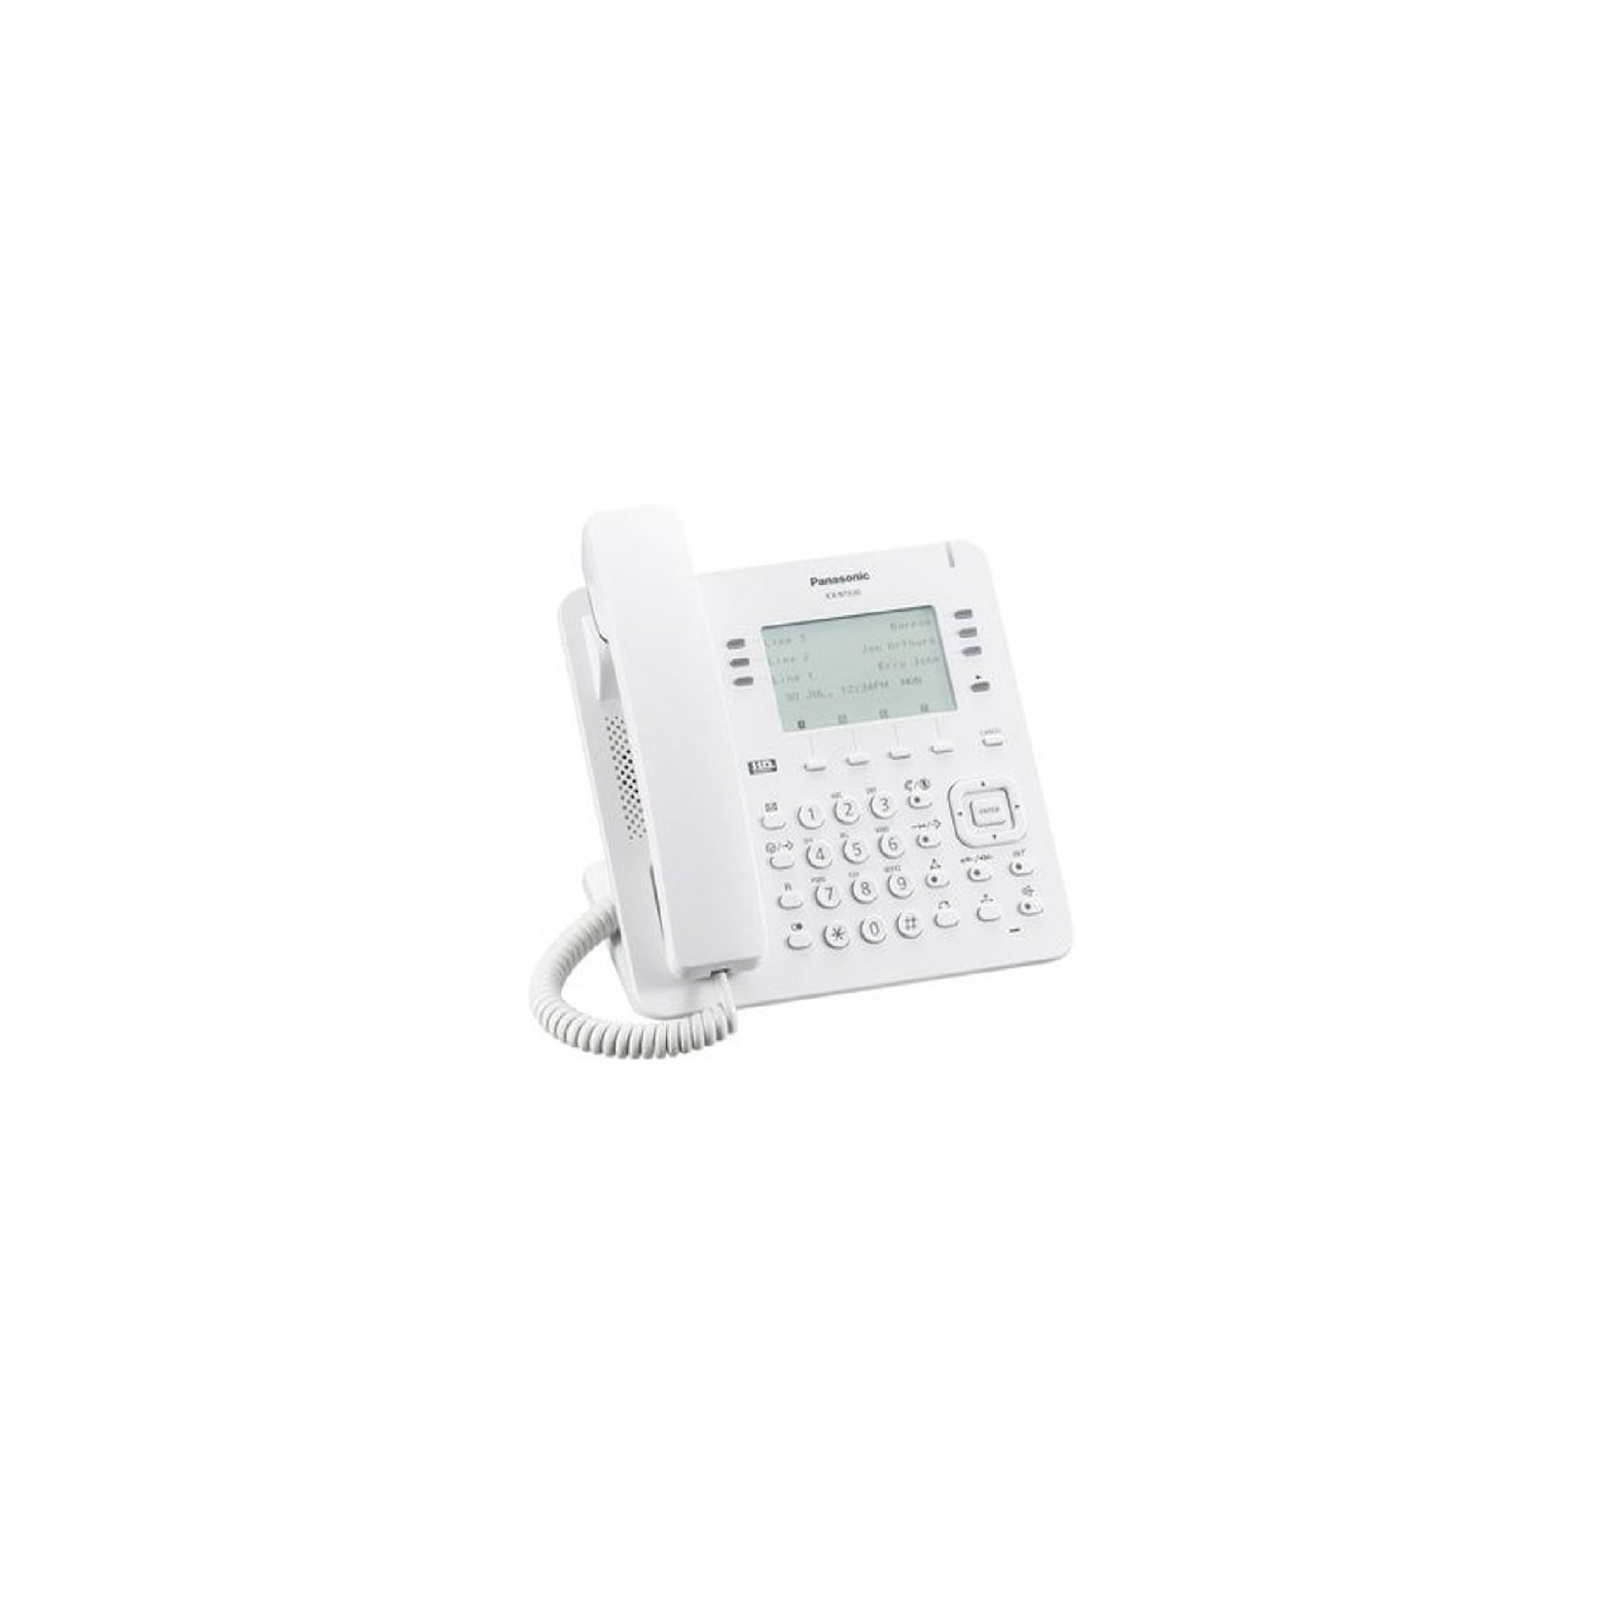 IP телефон Panasonic KX-NT630RU